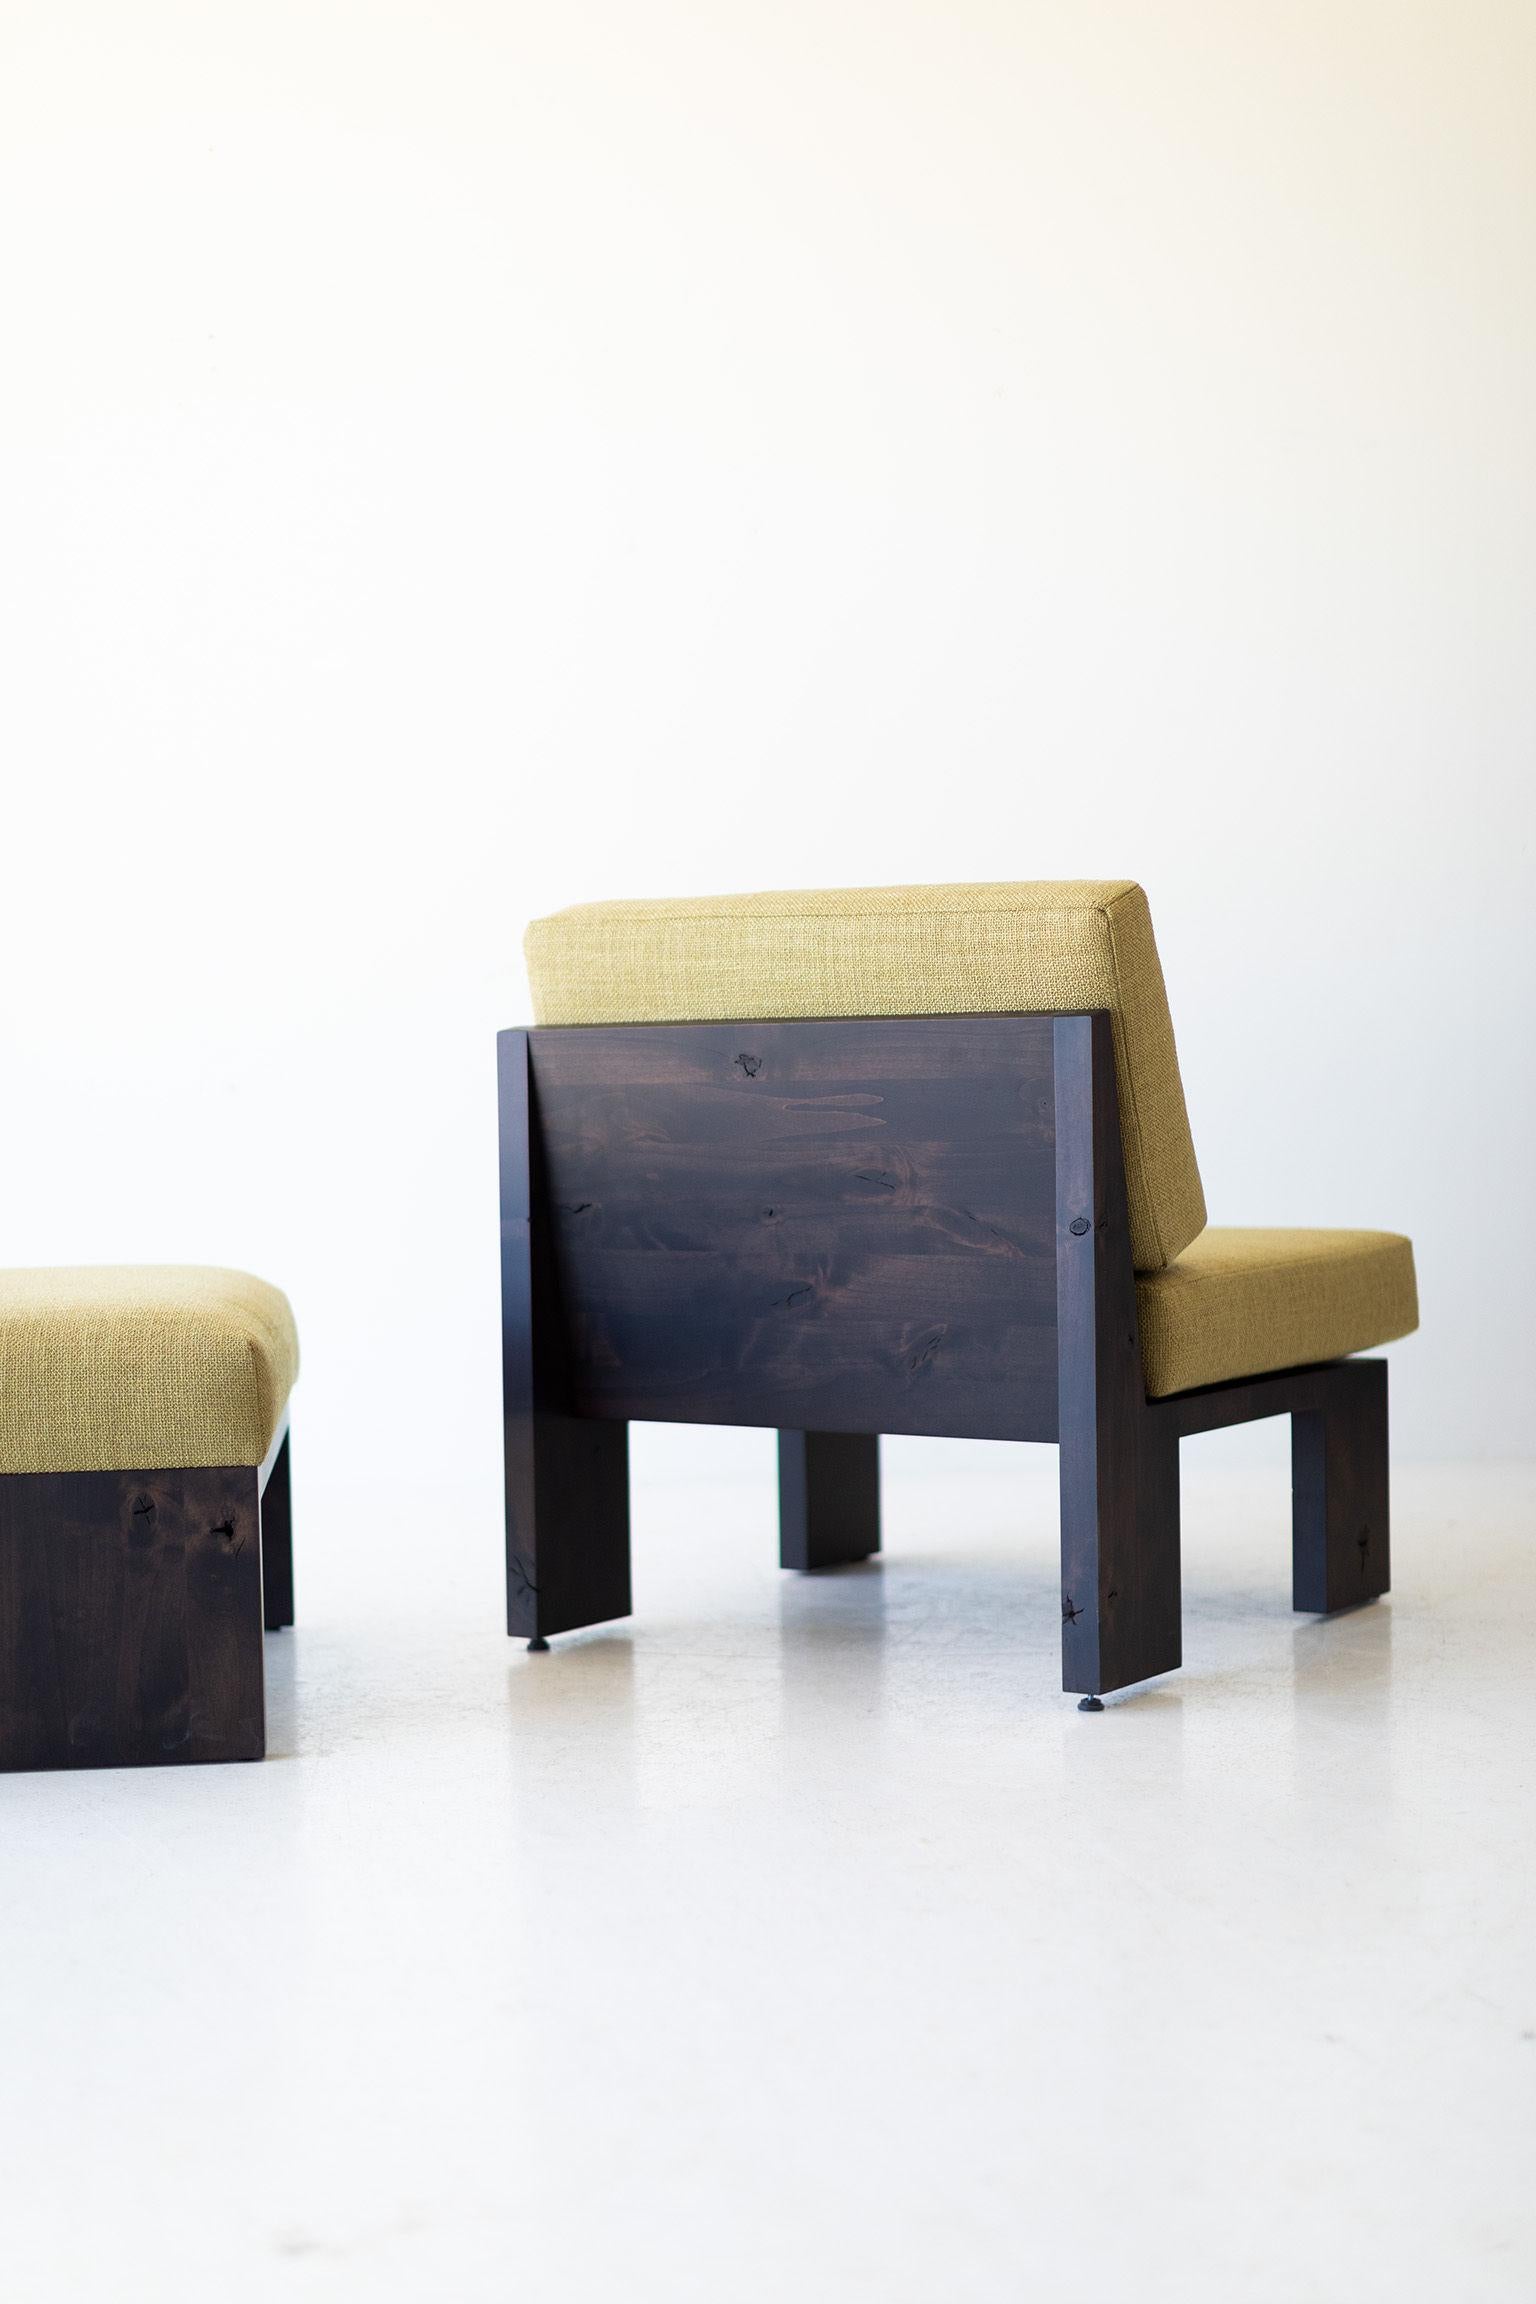 Dieser moderne Beistellstuhl von Chile wird in Ohio, USA, aus Massivholz gefertigt. Die Silhouette des Loungesessels ist einfach, modern und schlank, mit bequemen Rücken- und Sitzkissen. Dies ist der perfekte Stuhl für jeden Raum, ob drinnen oder